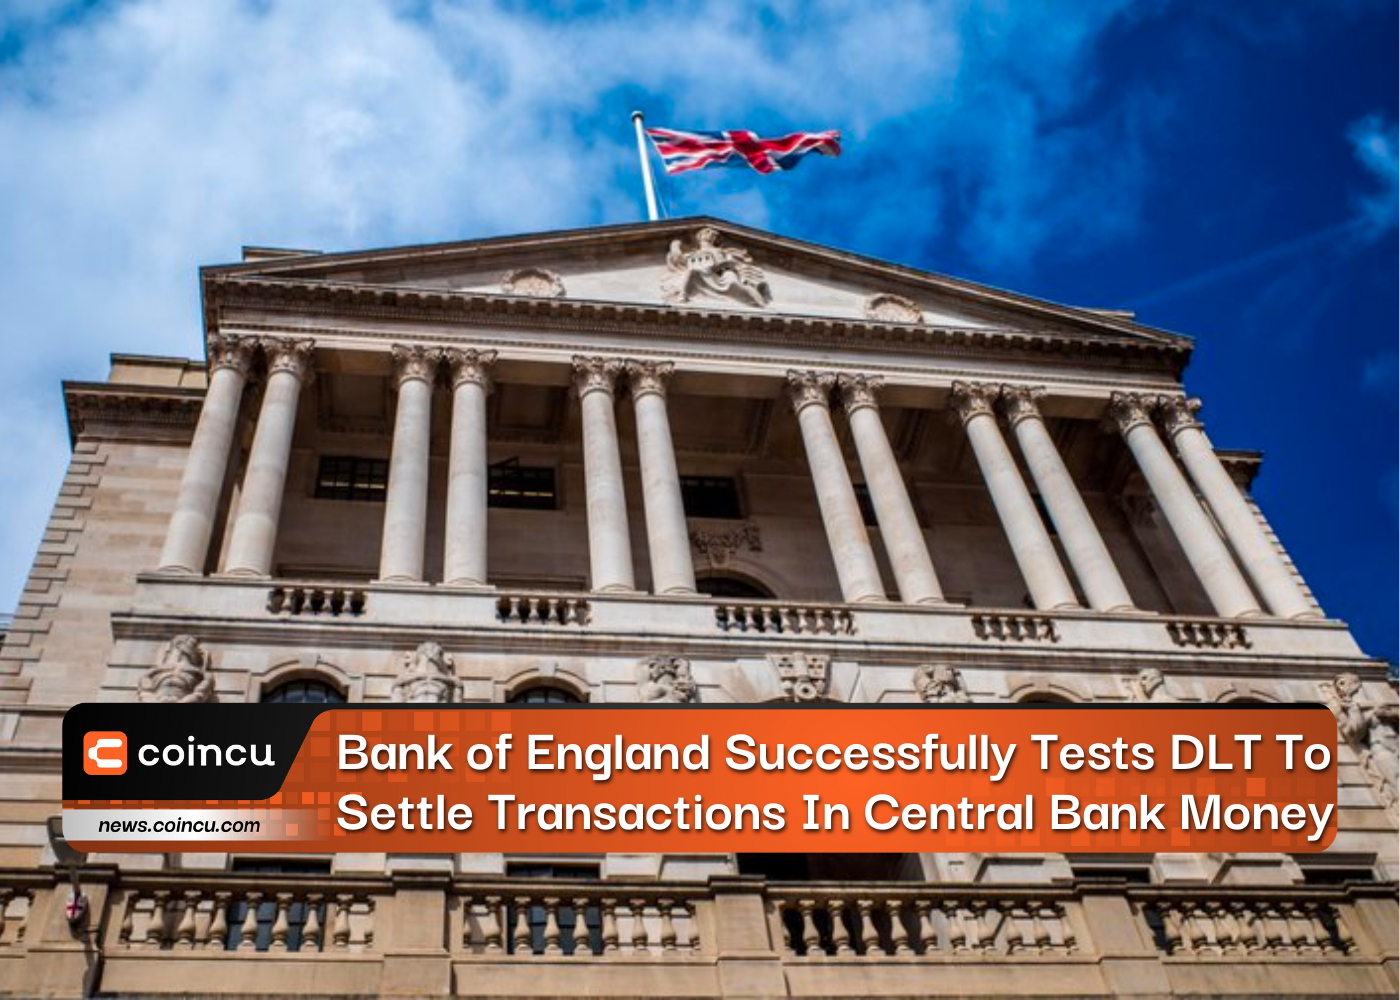 Die Bank of England testet DLT erfolgreich zur Abwicklung von Transaktionen in Zentralbankgeld